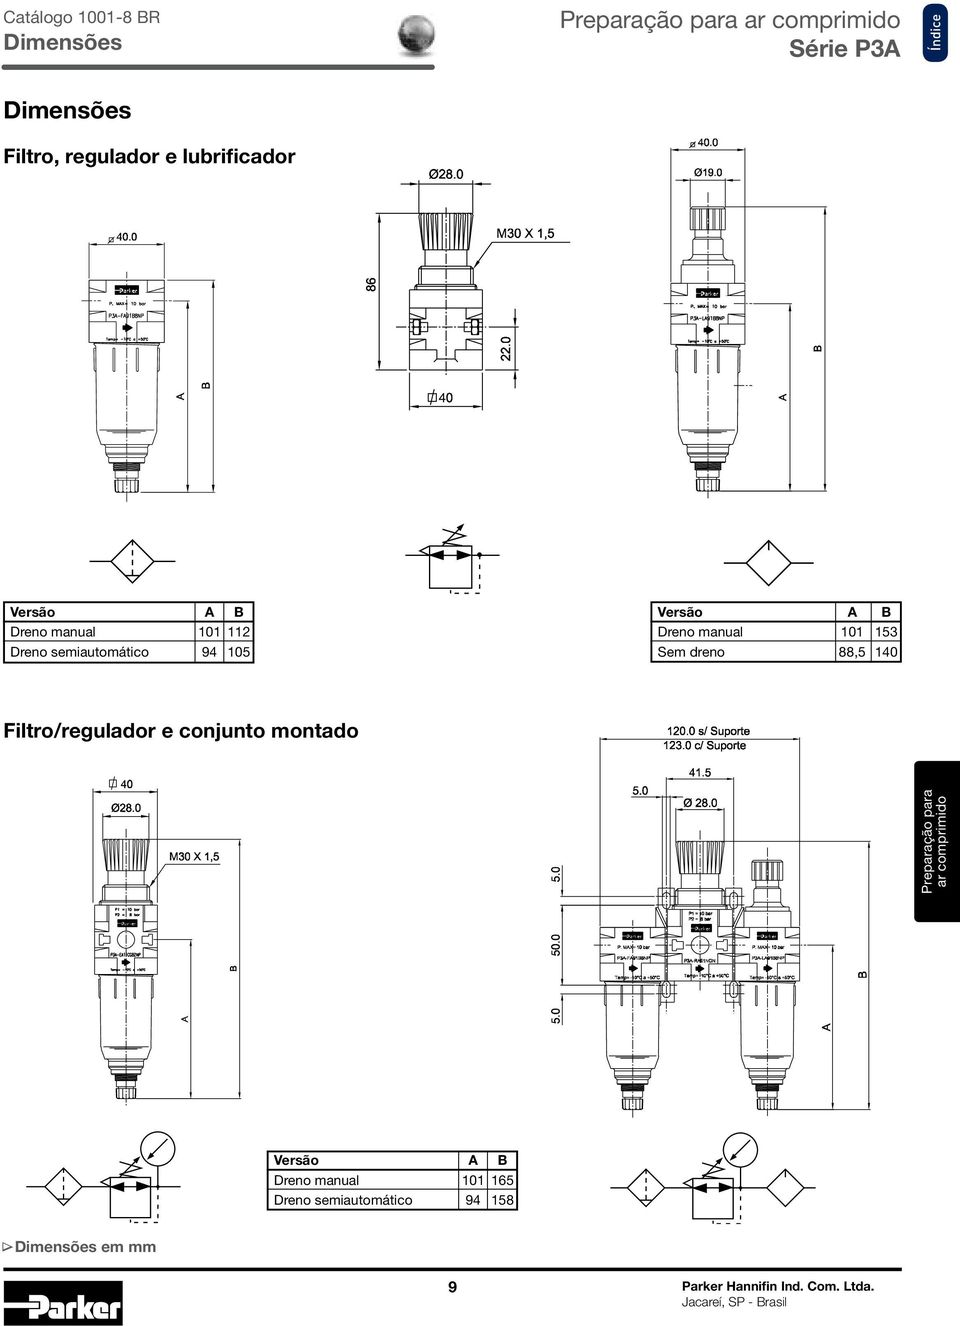 manual Sem dreno 88, Filtro/regulador e conjunto montado Preparação